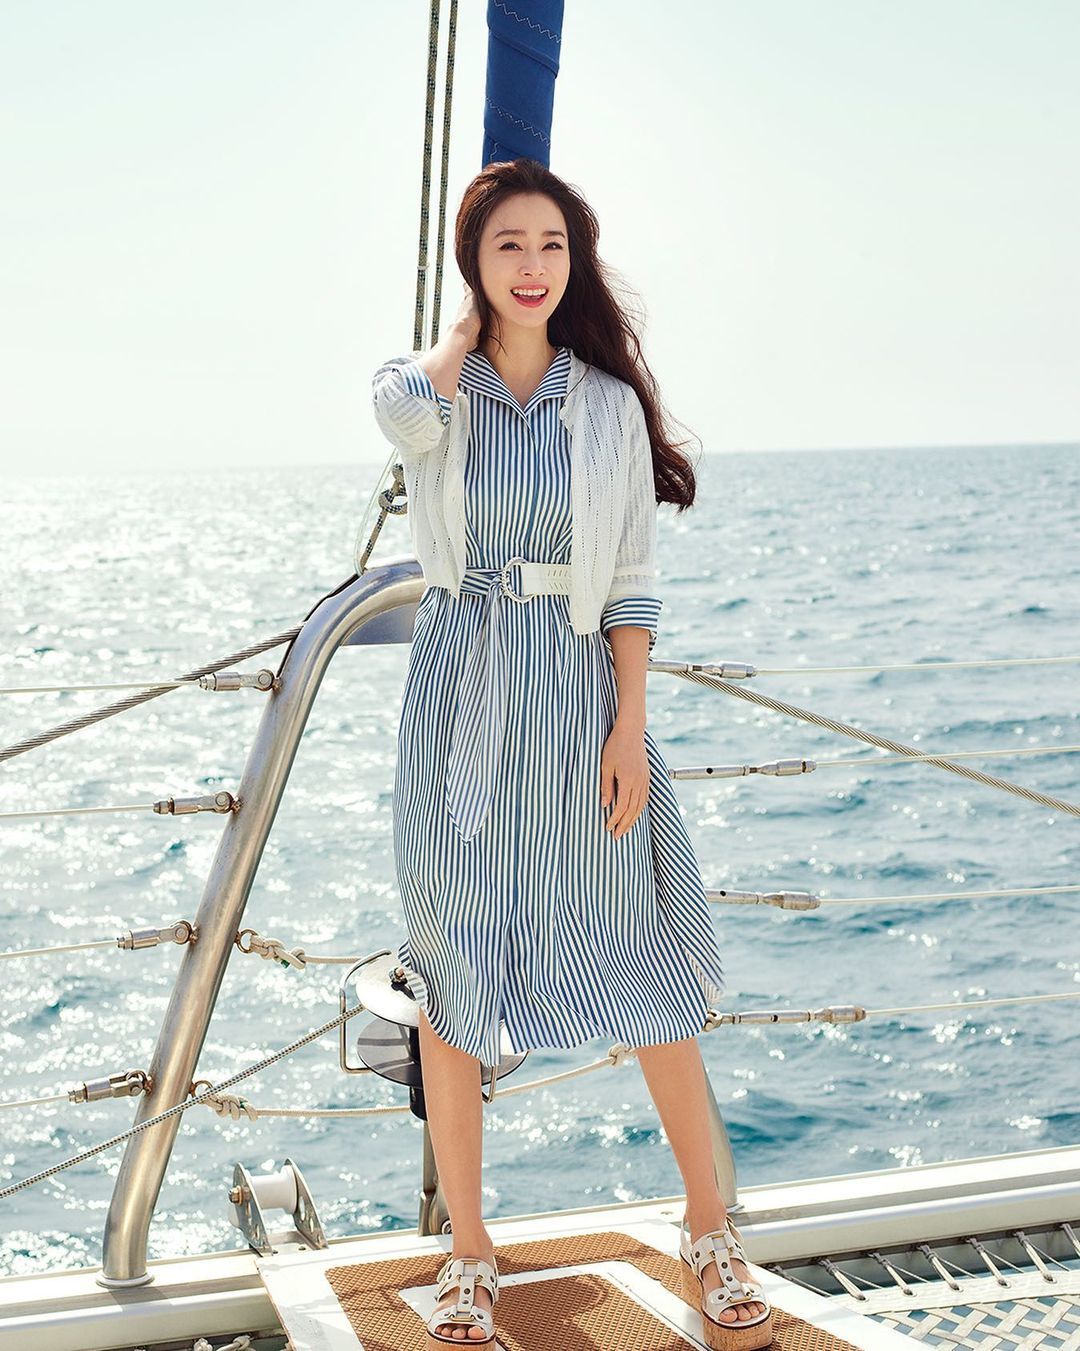 Khán giả khen nhan sắc Kim Tae Hee khi diện loạt váy áo hè